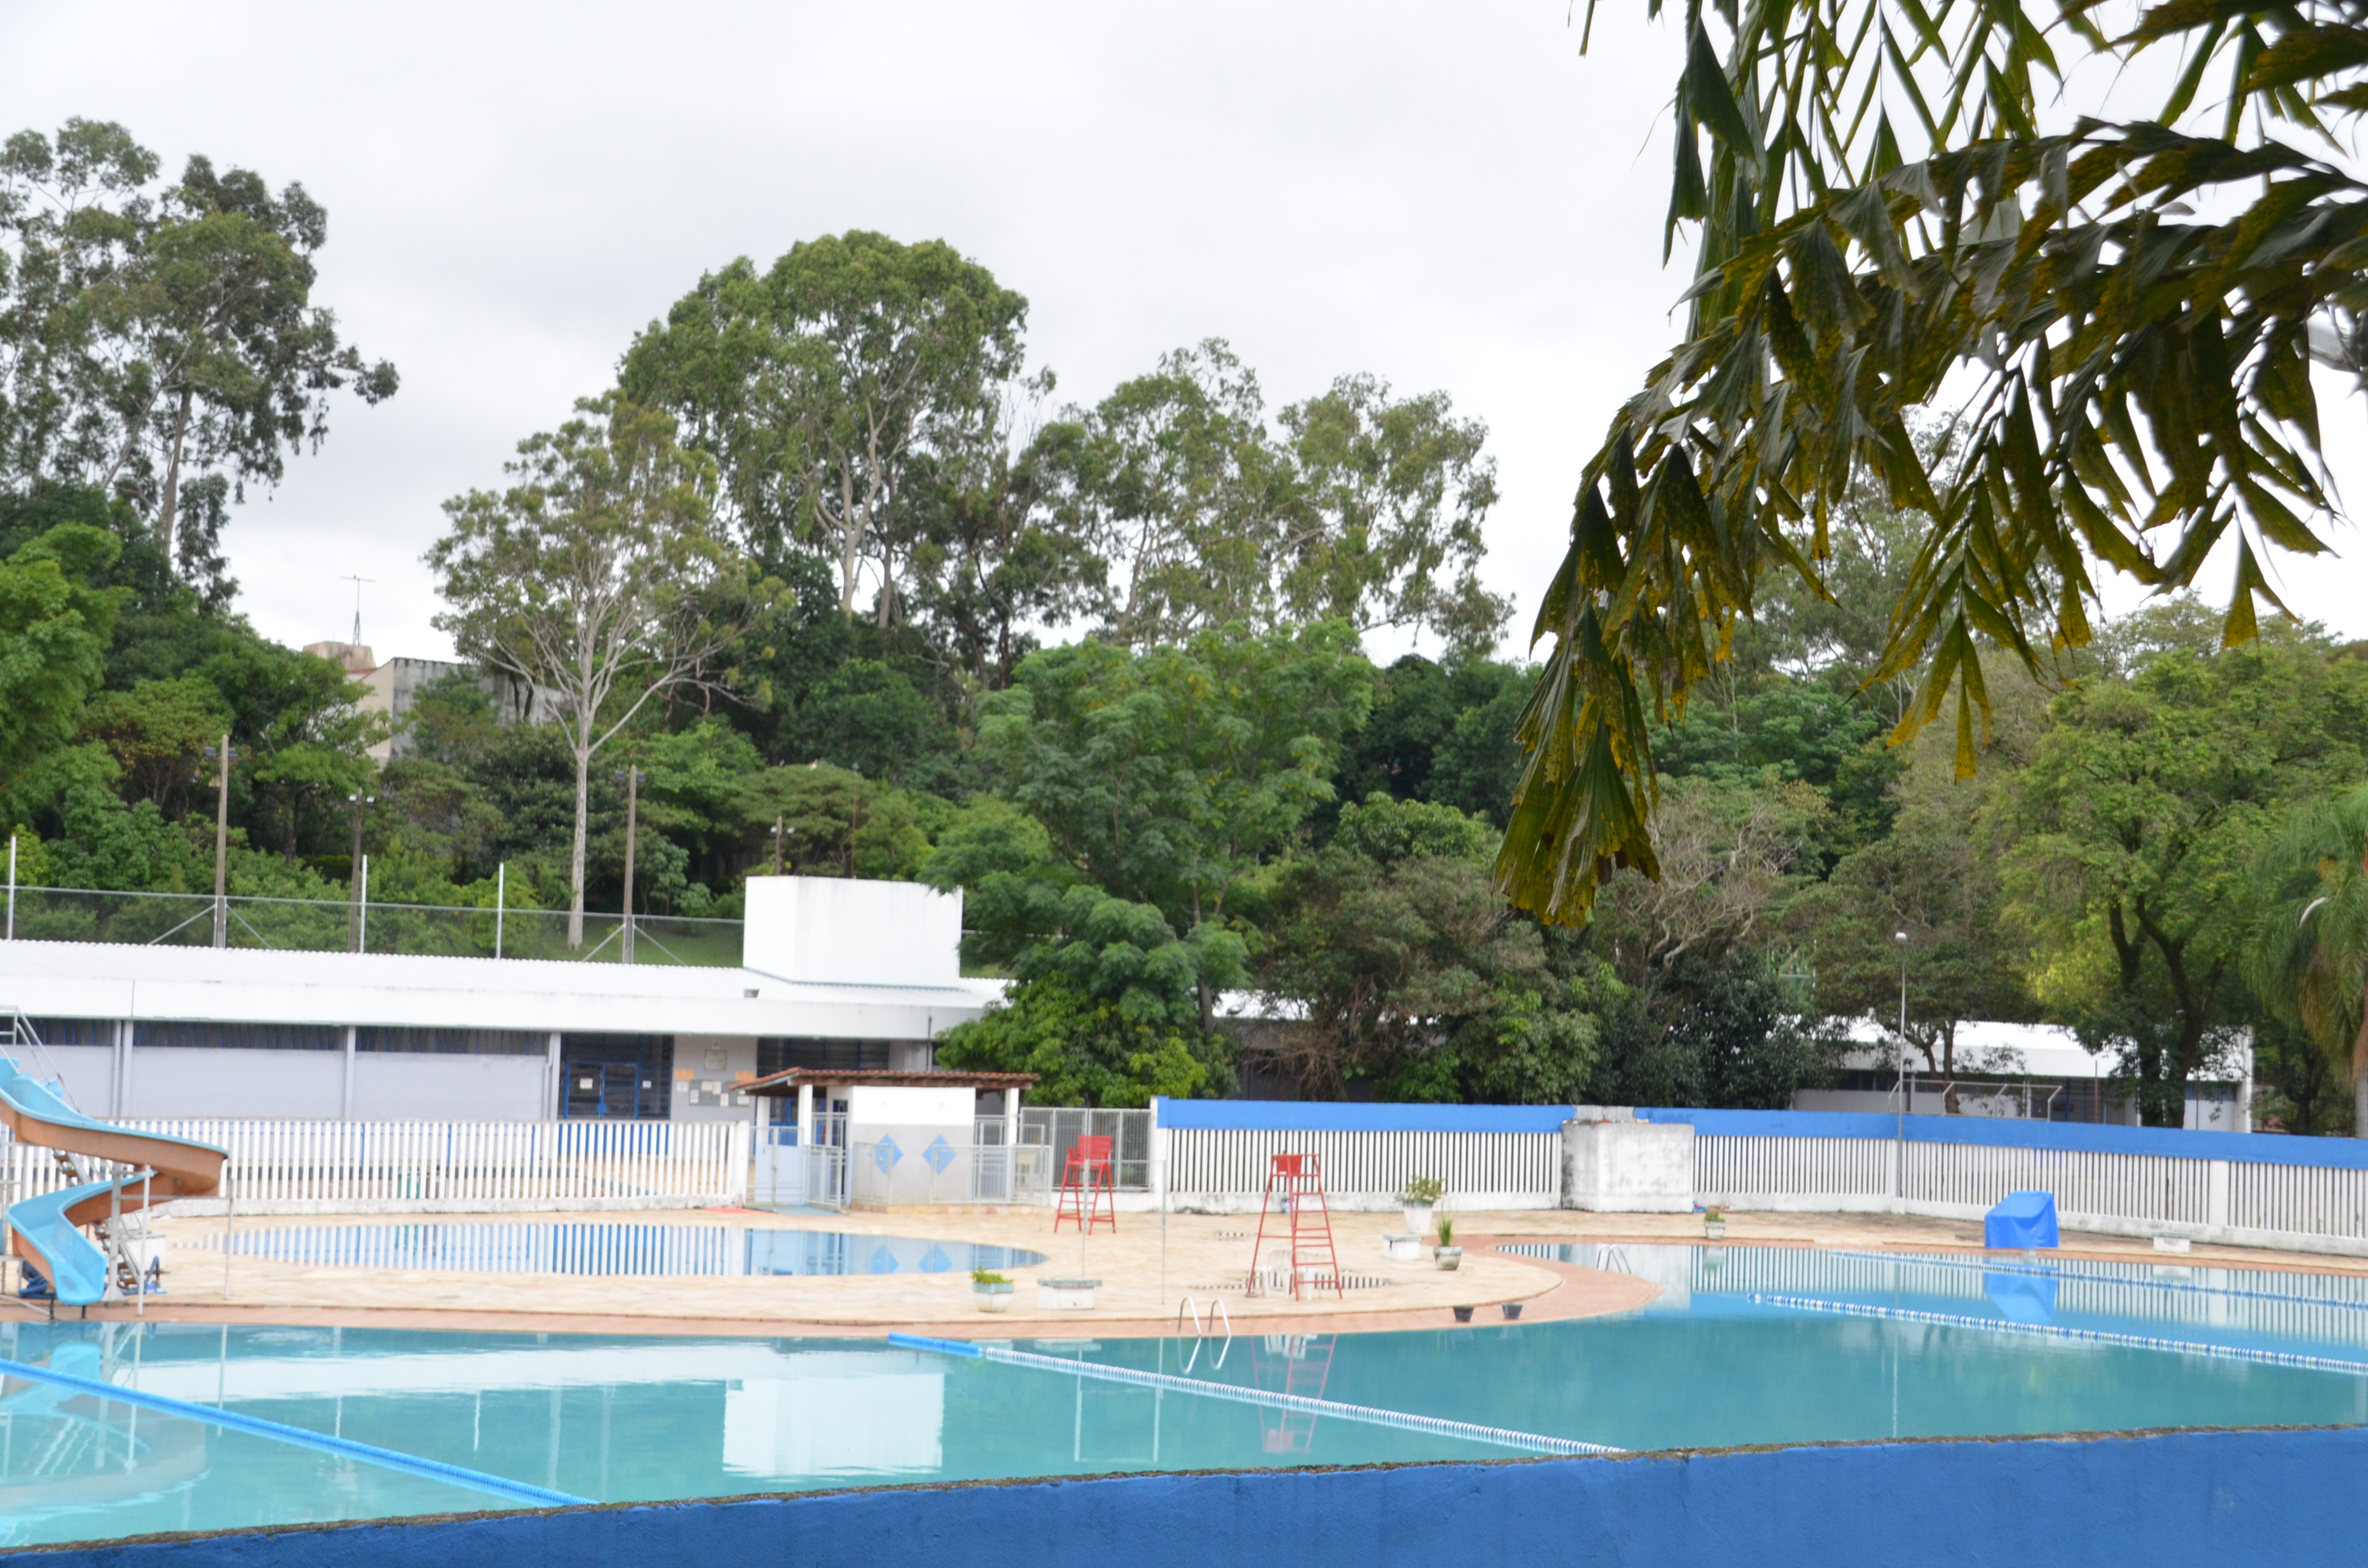 Centro Esportivo Pelezão, na imagem piscinas, bancos de salva-vidas e muitas árvores em um dia nublado.